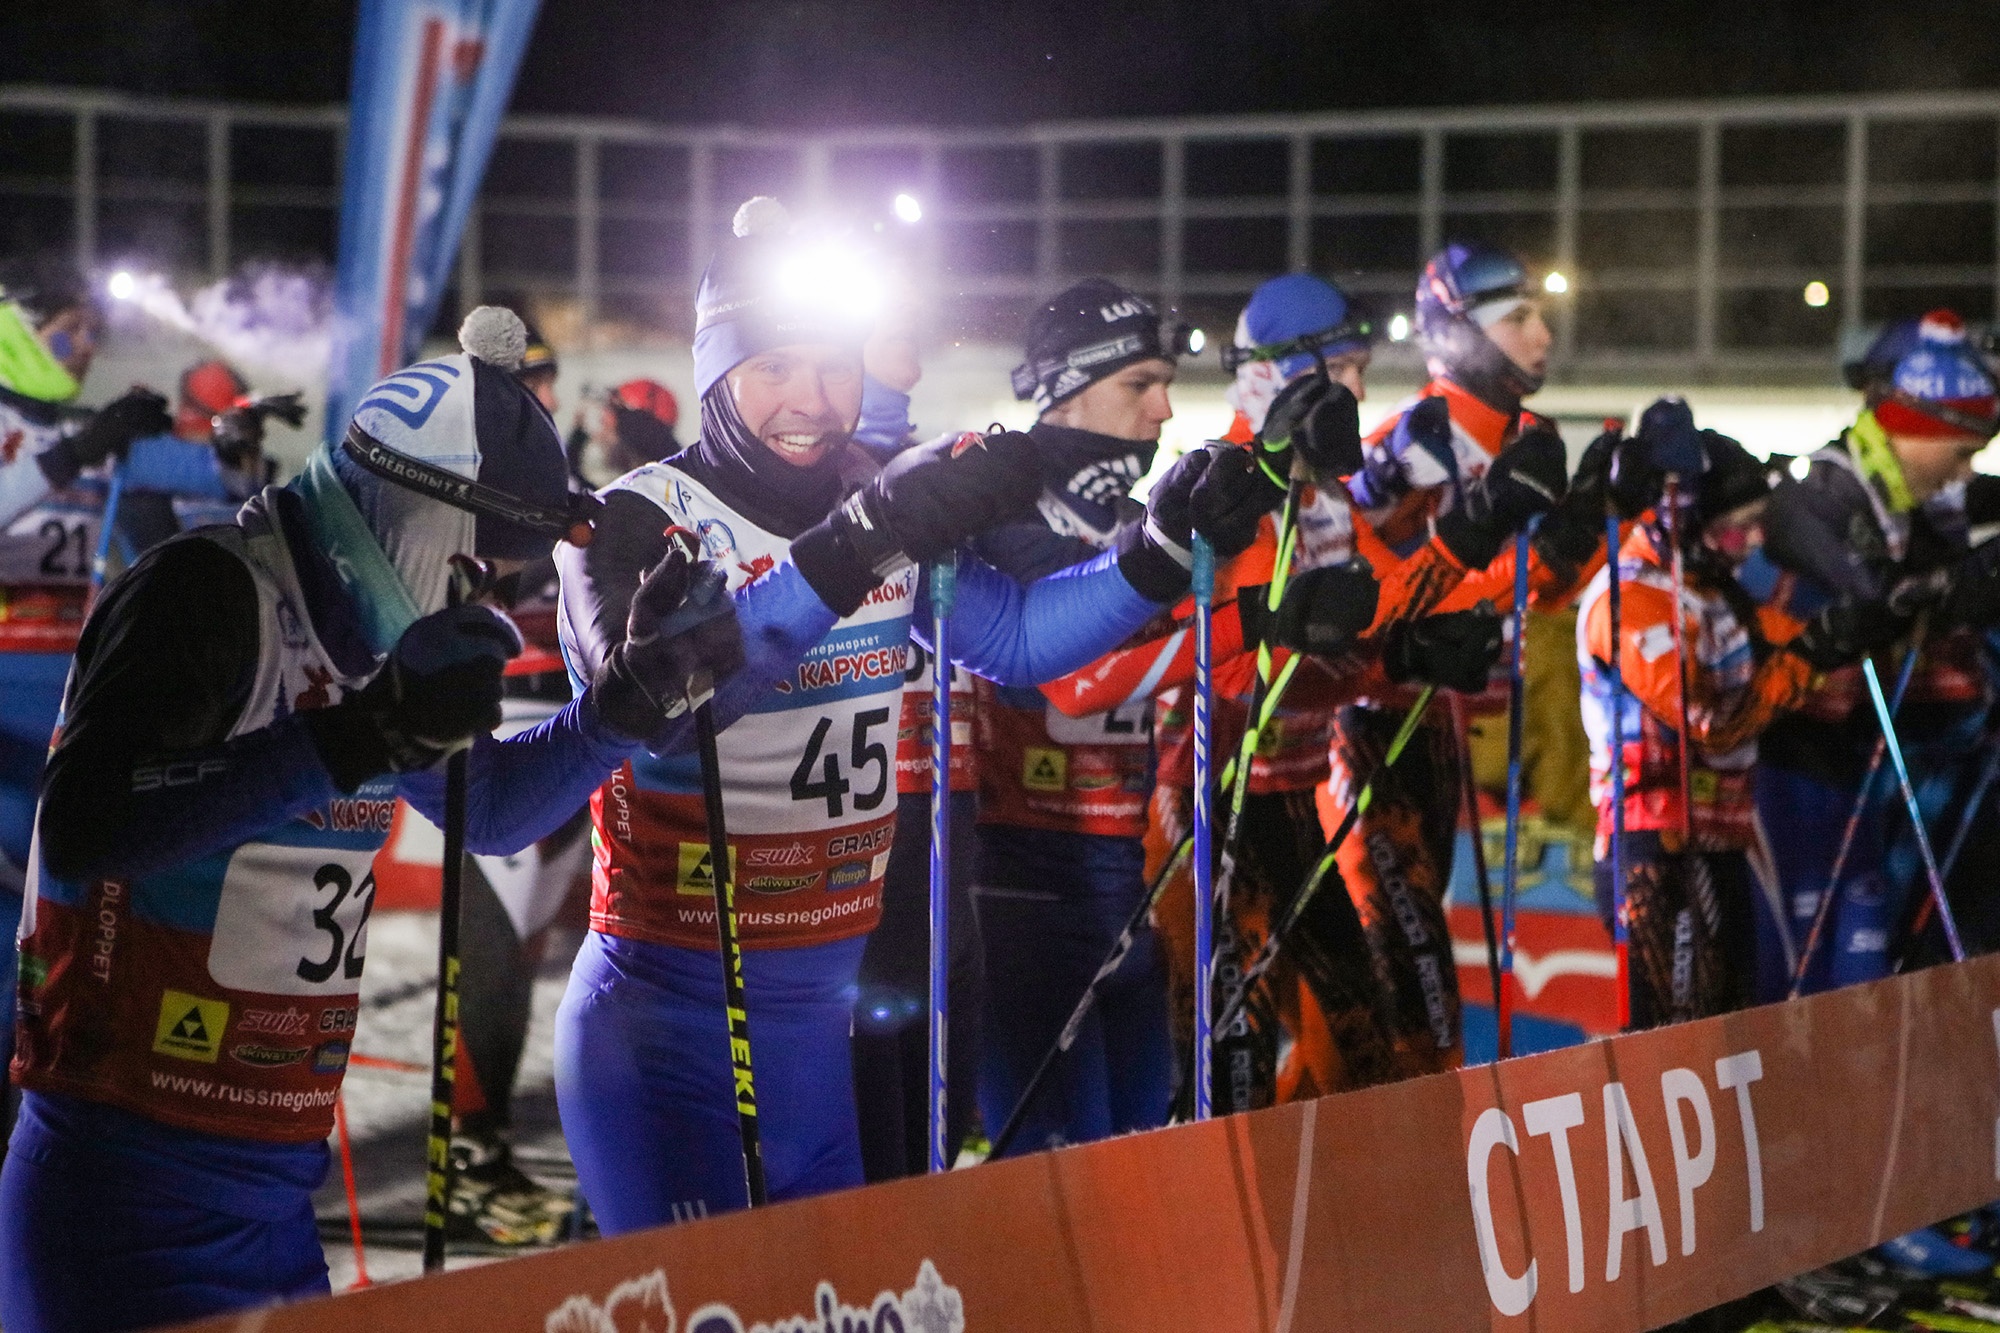 Всероссийская массовая лыжная гонка «Лыжня России» проходила в эти выходные по всей стране